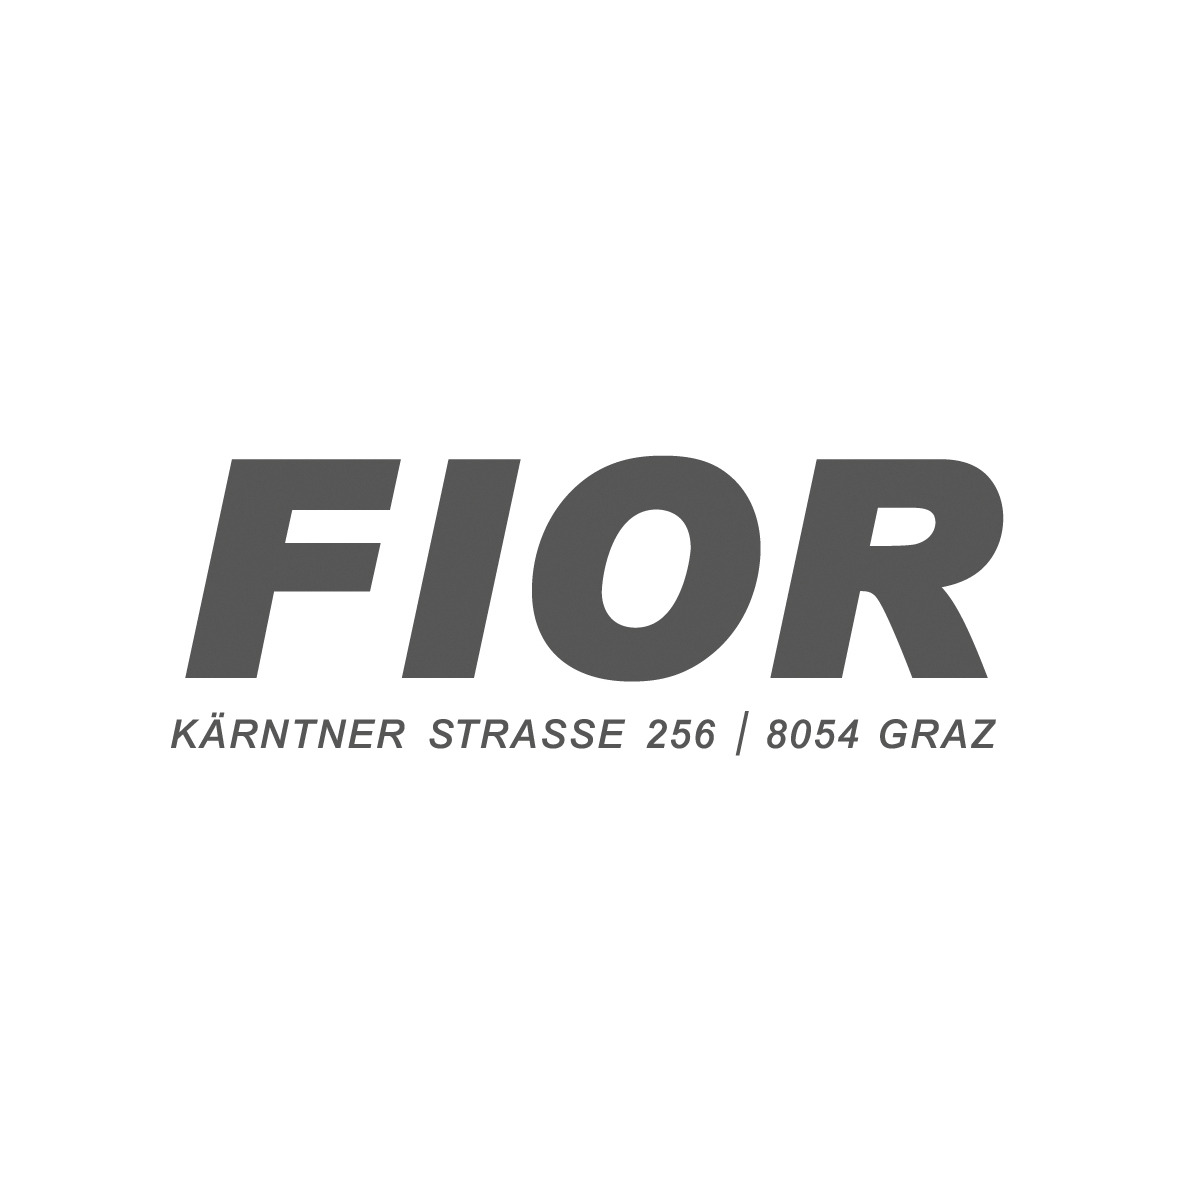 FIOR Graz | SUBARU | ISUZU | OPEL | FIOR Camping Logo